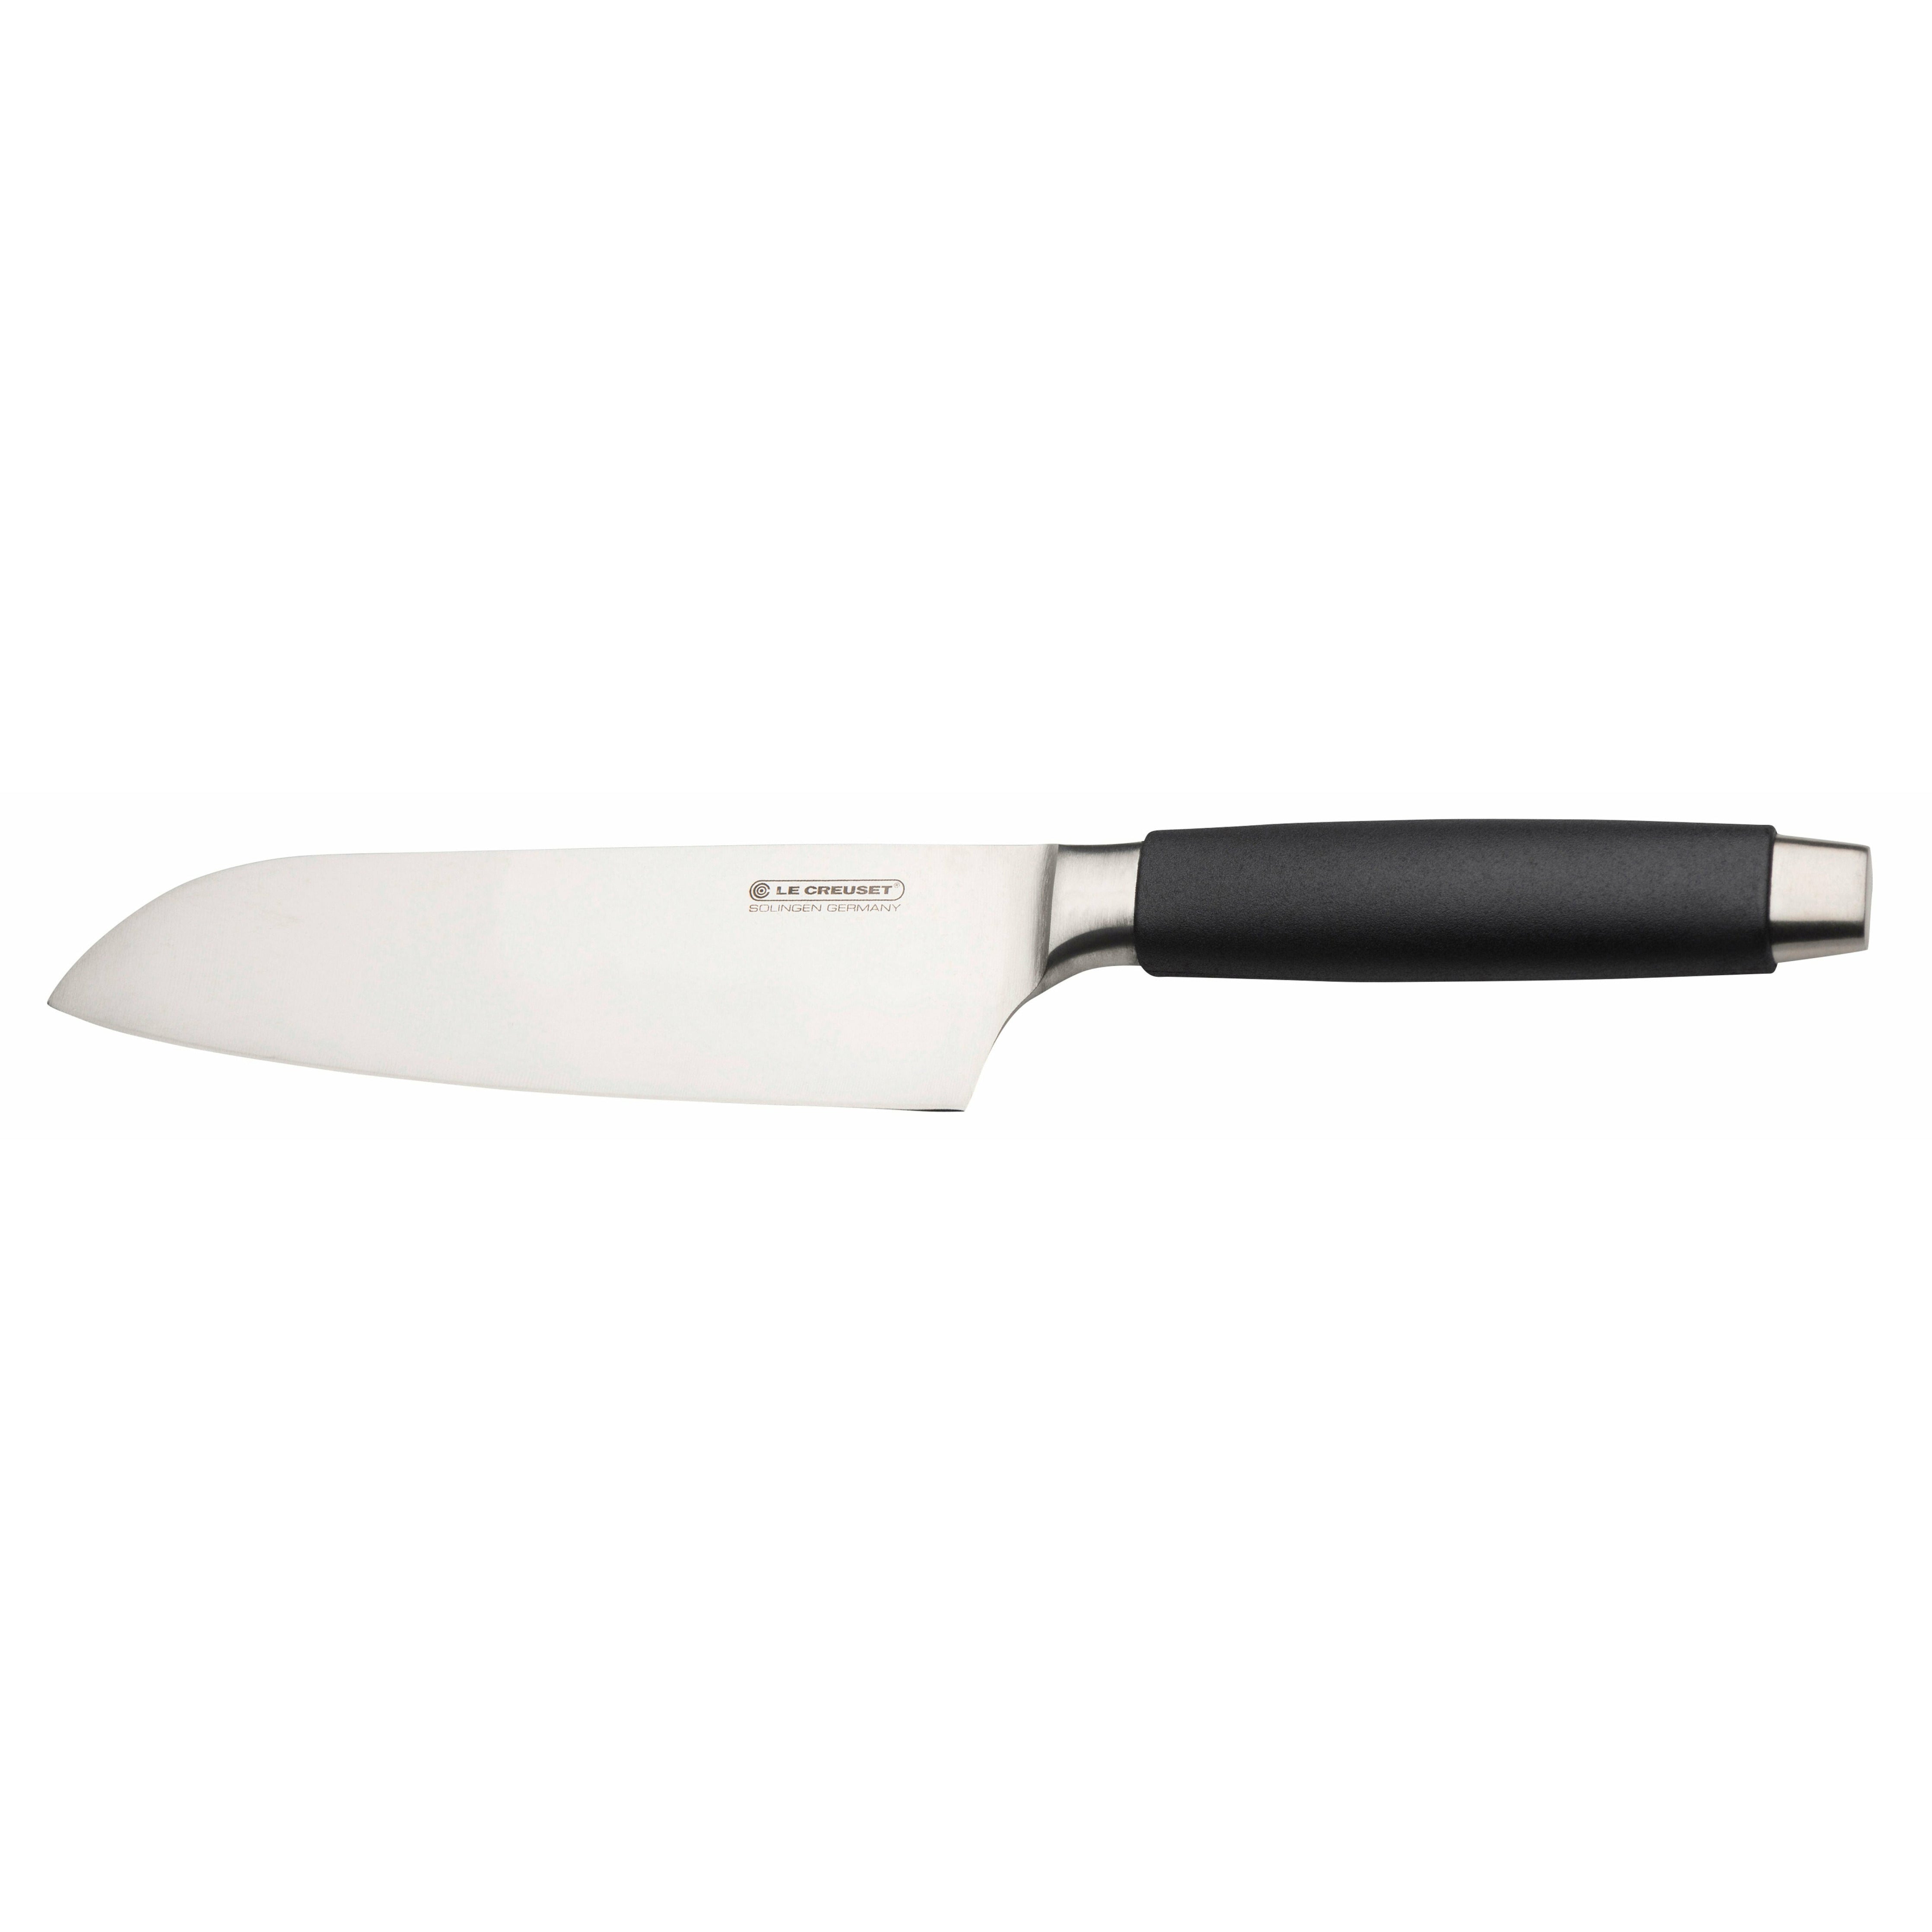 Le Creuset Santoku刀标准带有黑色手柄，18厘米